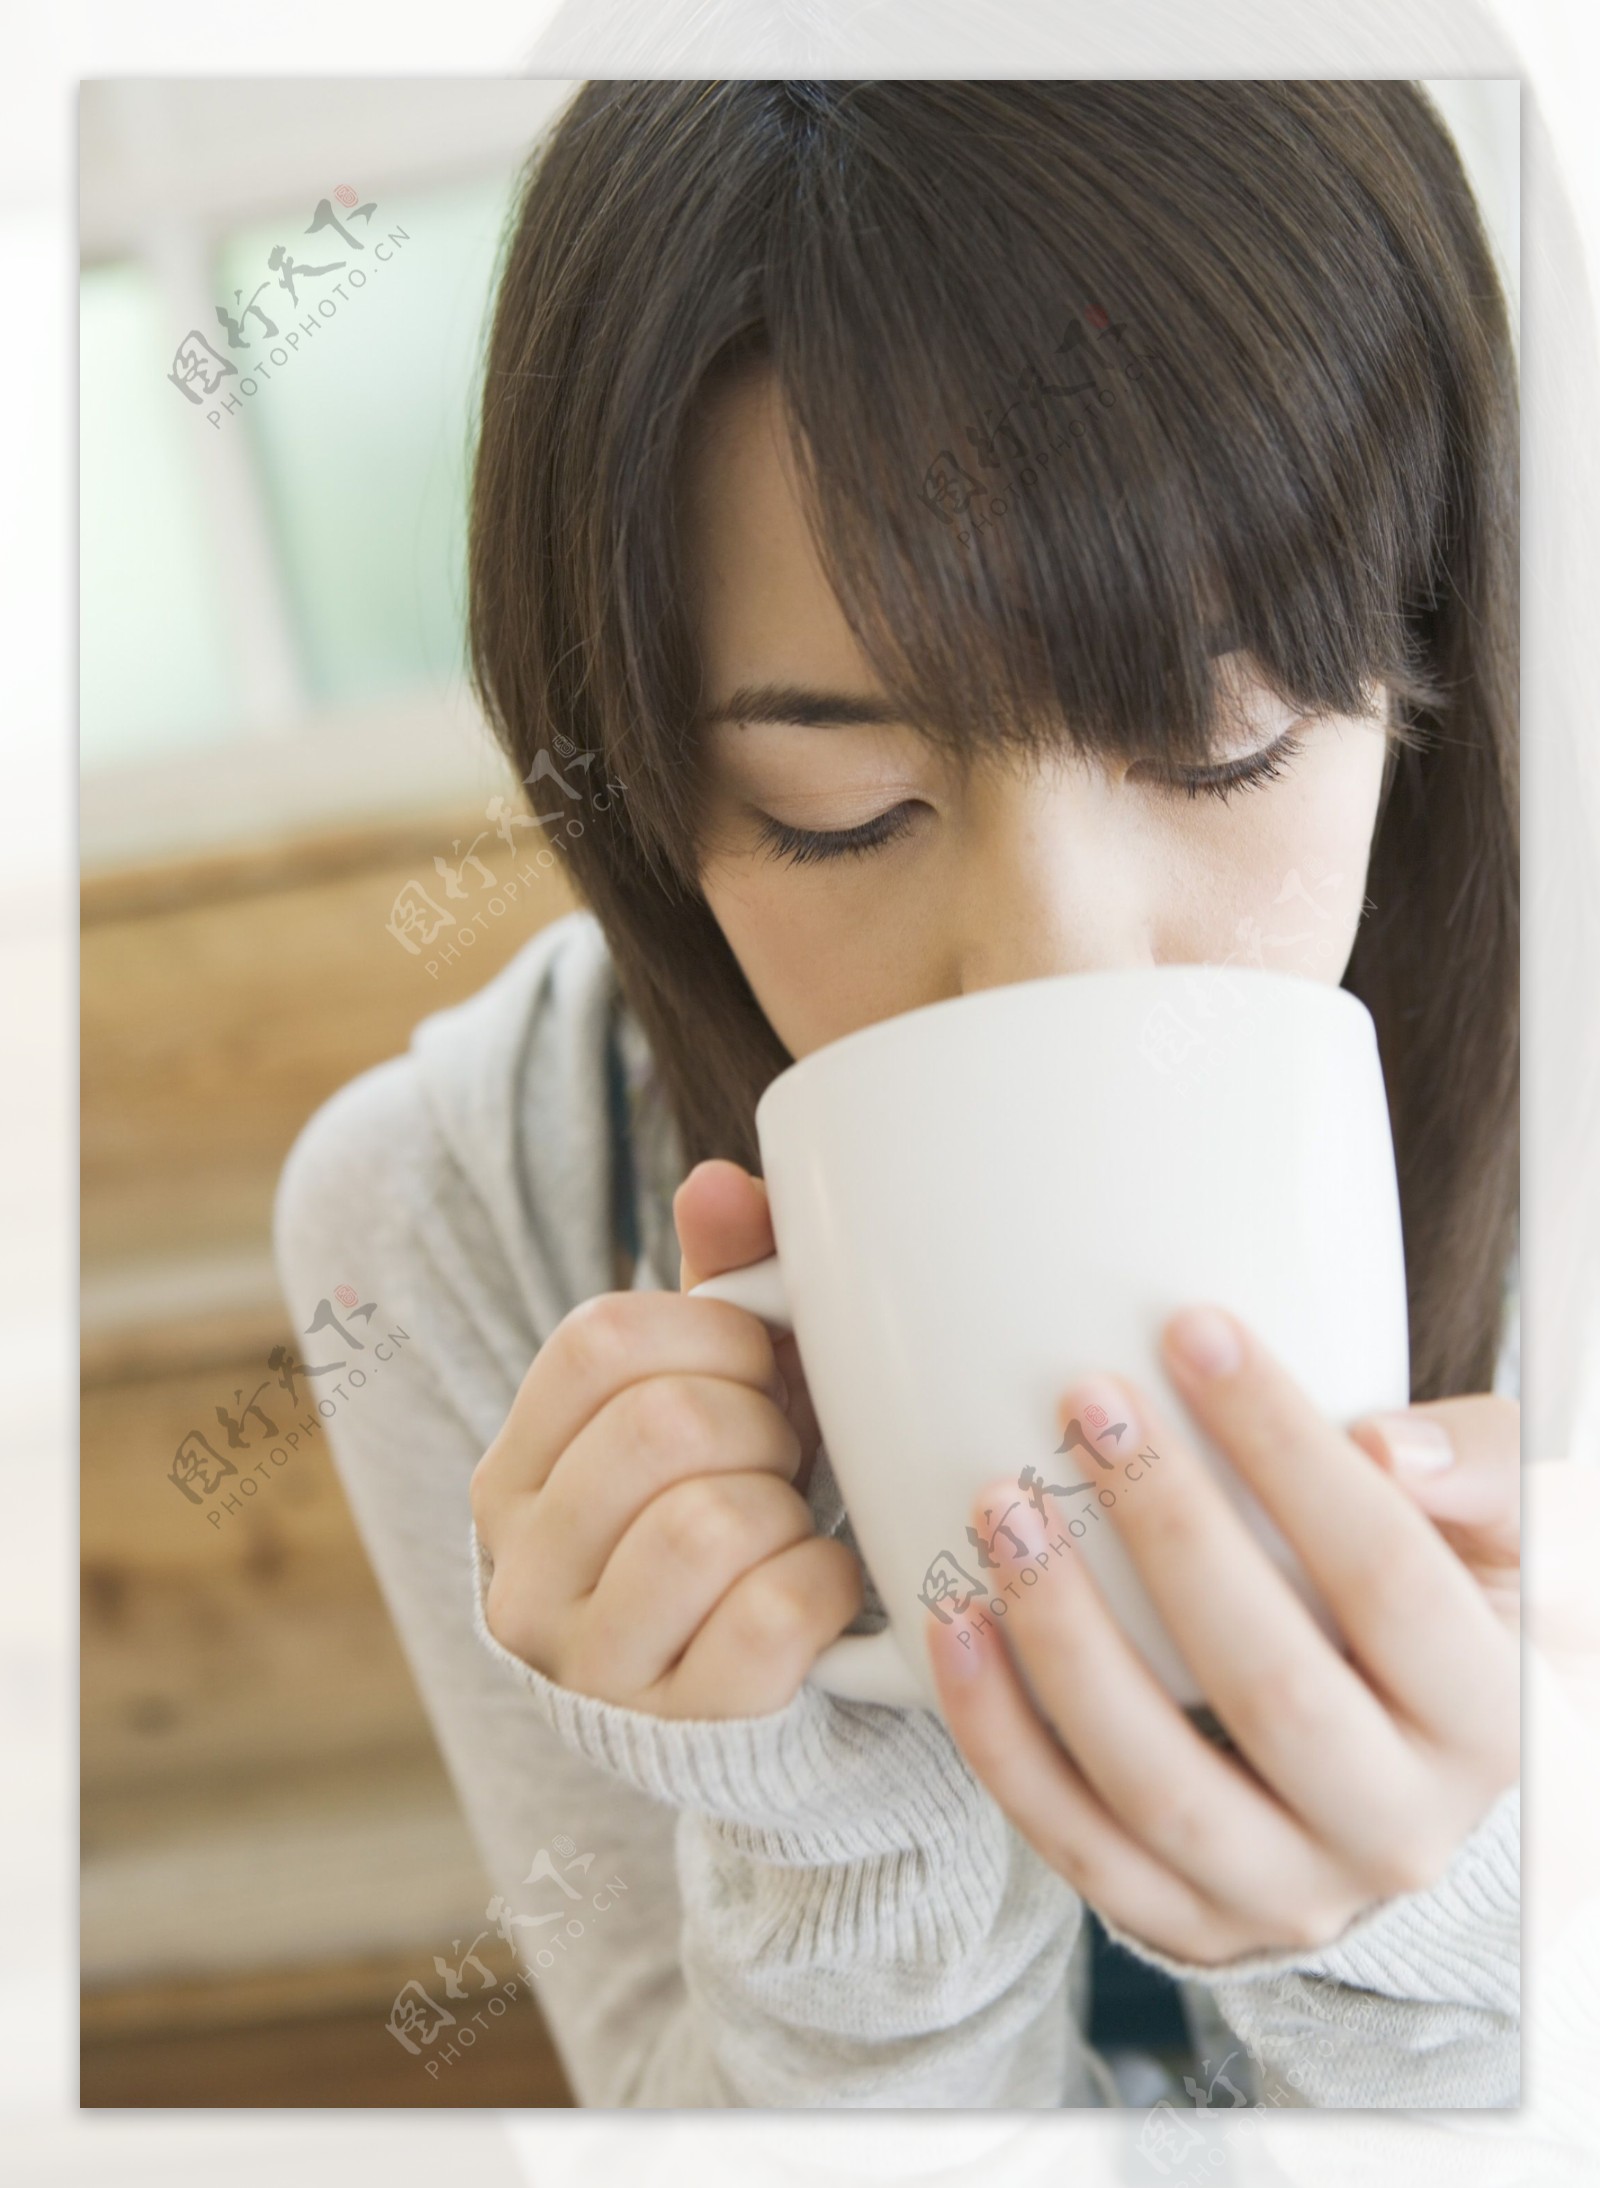 喝茶的美女图片